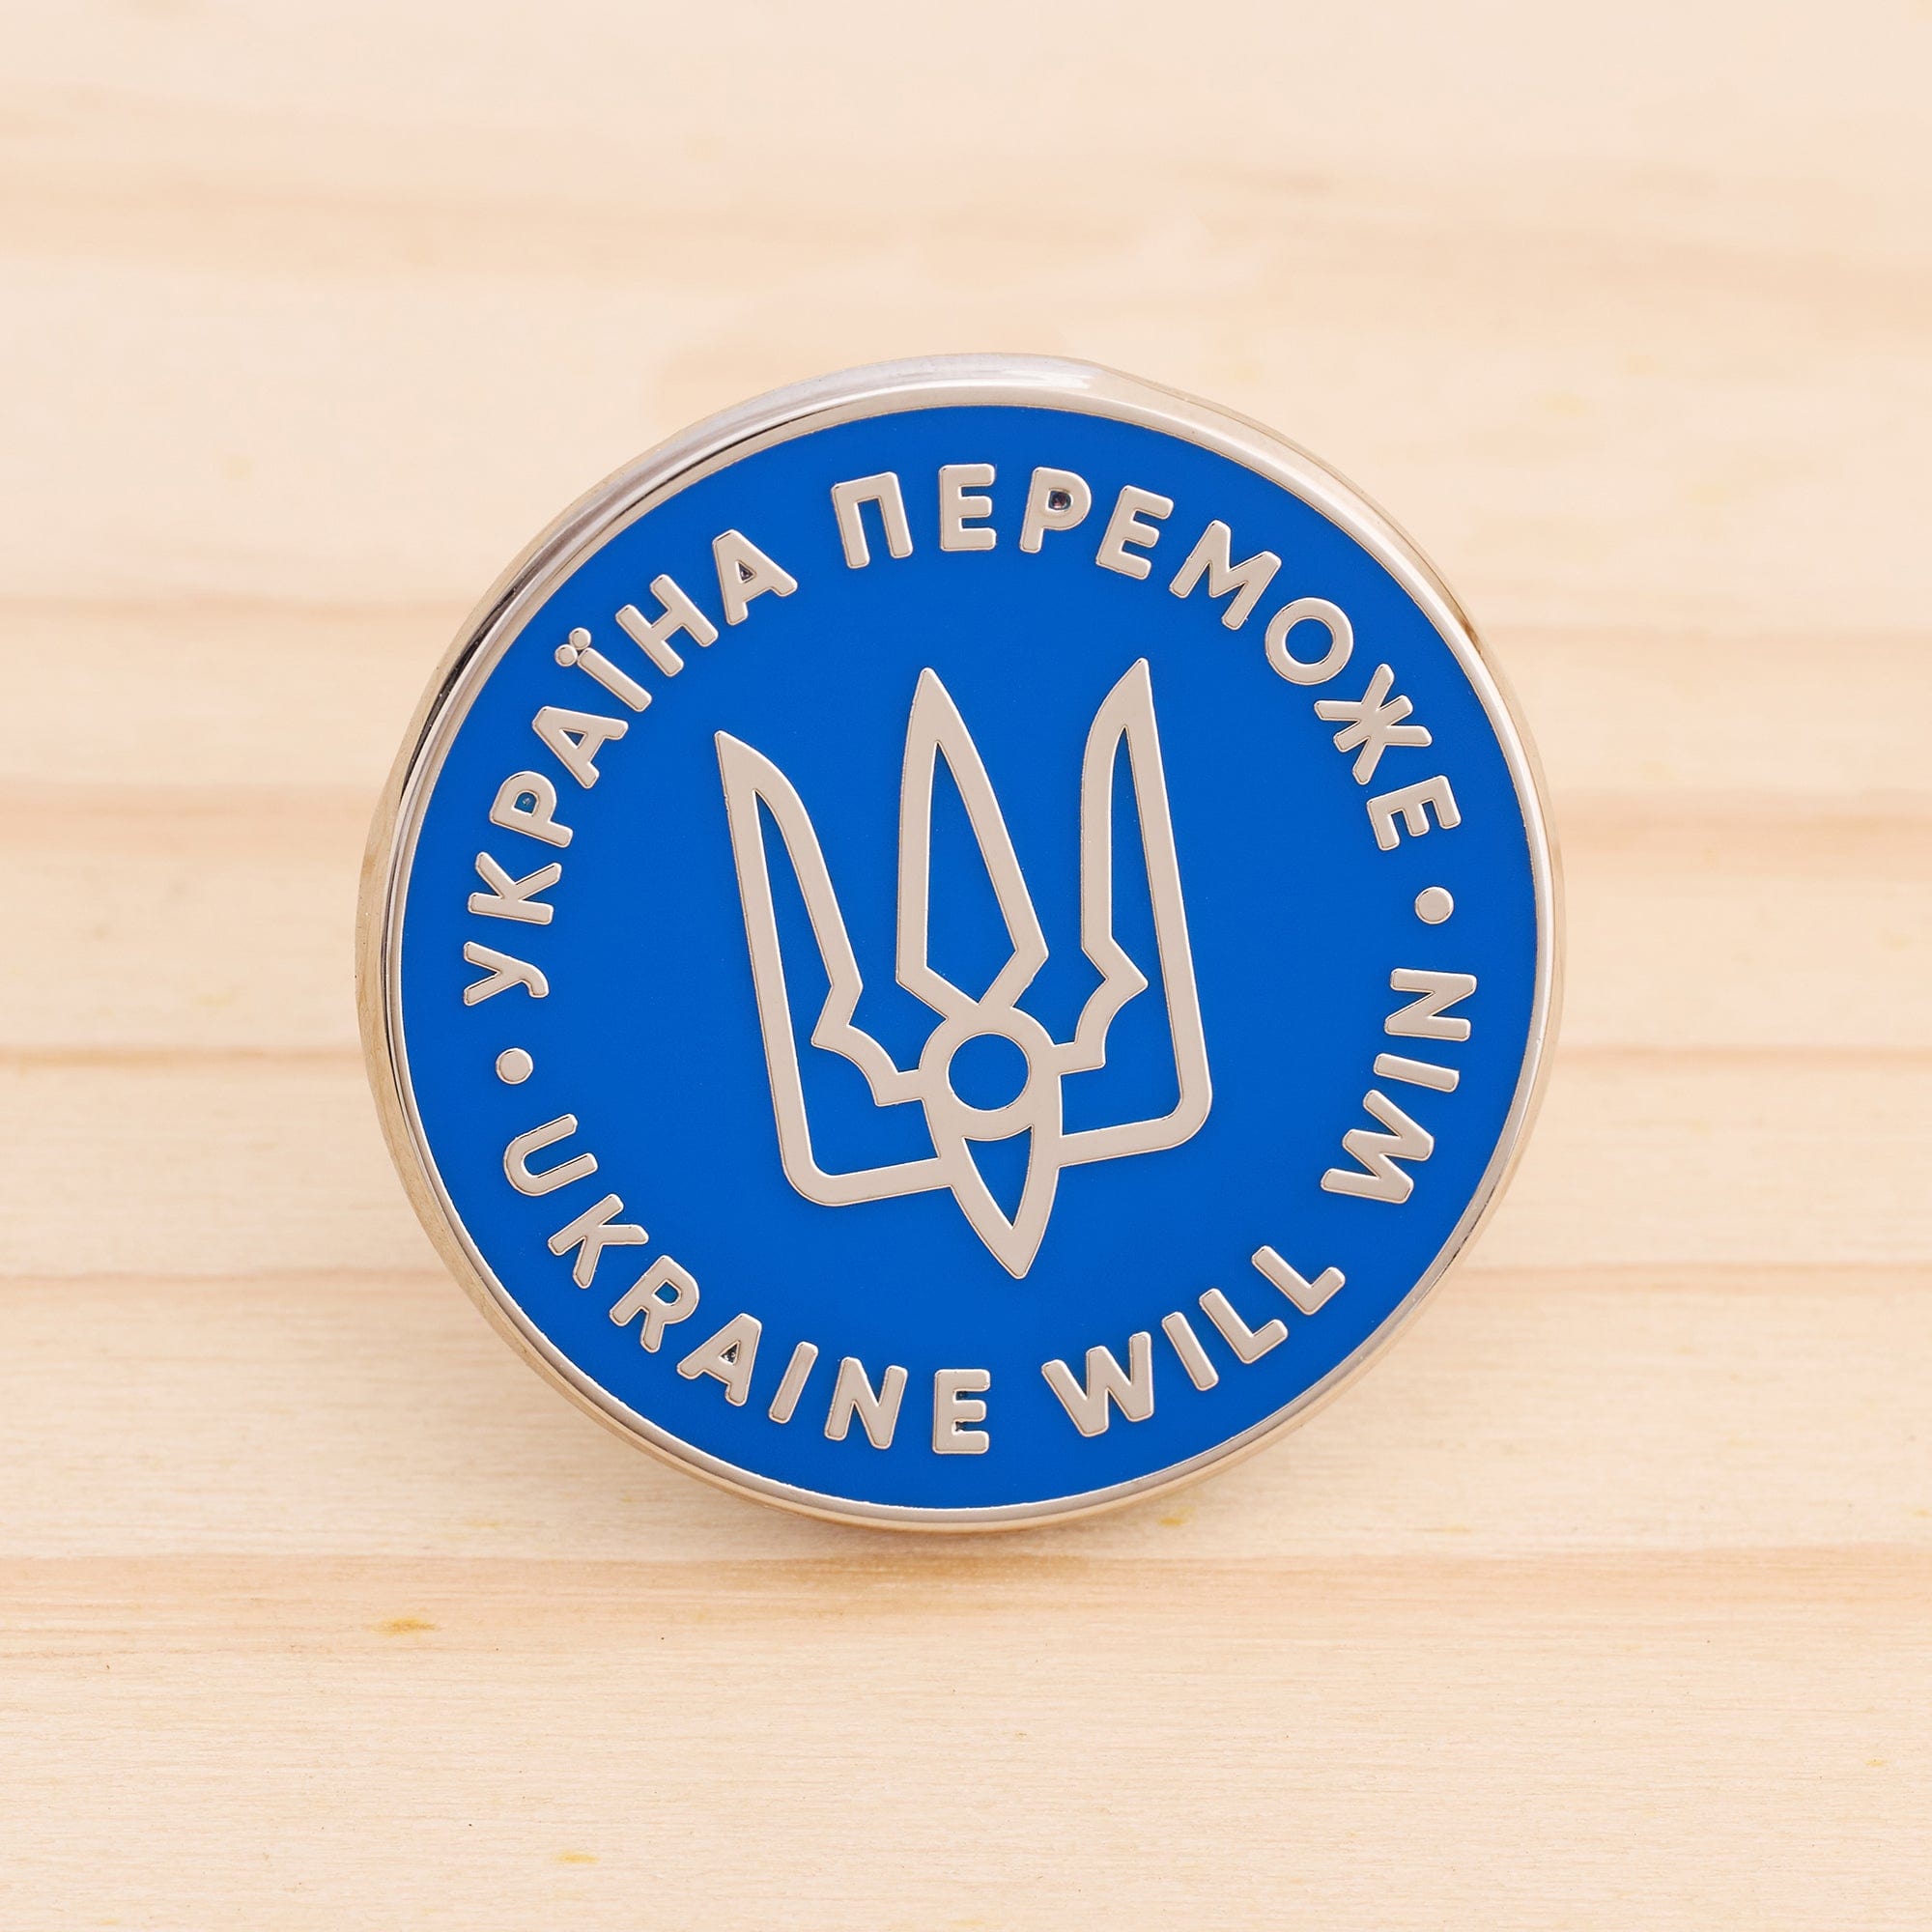 Ukraine Will Win Pin by Mykola Kovalenko